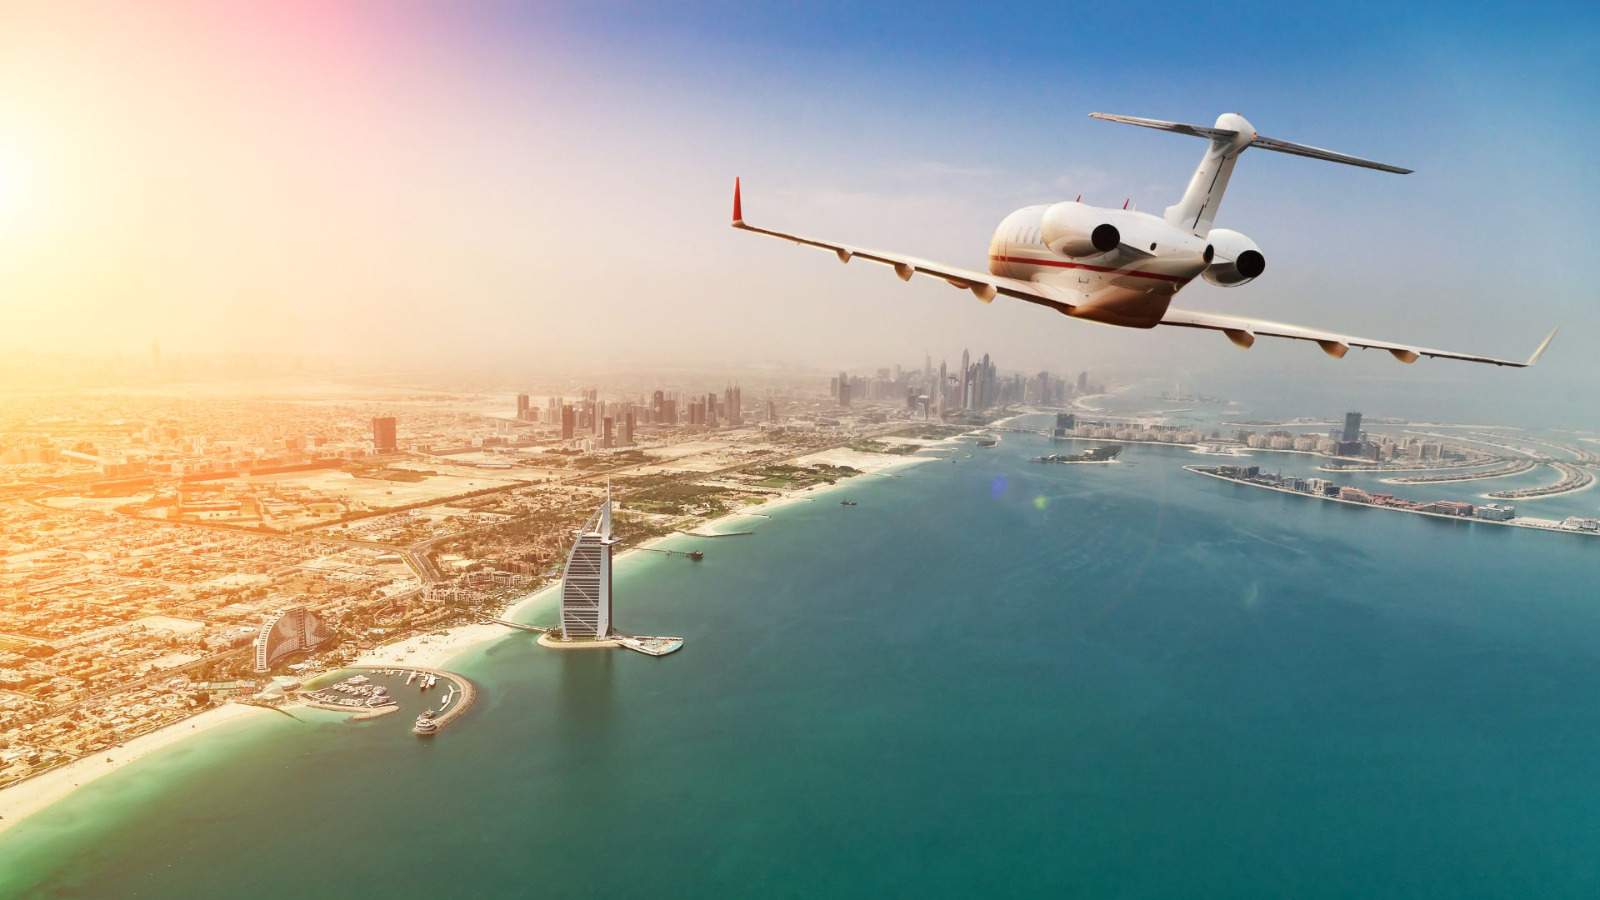 Ekspansi Bandara Internasional Dubai, Momentum Baru untuk Sektor Properti